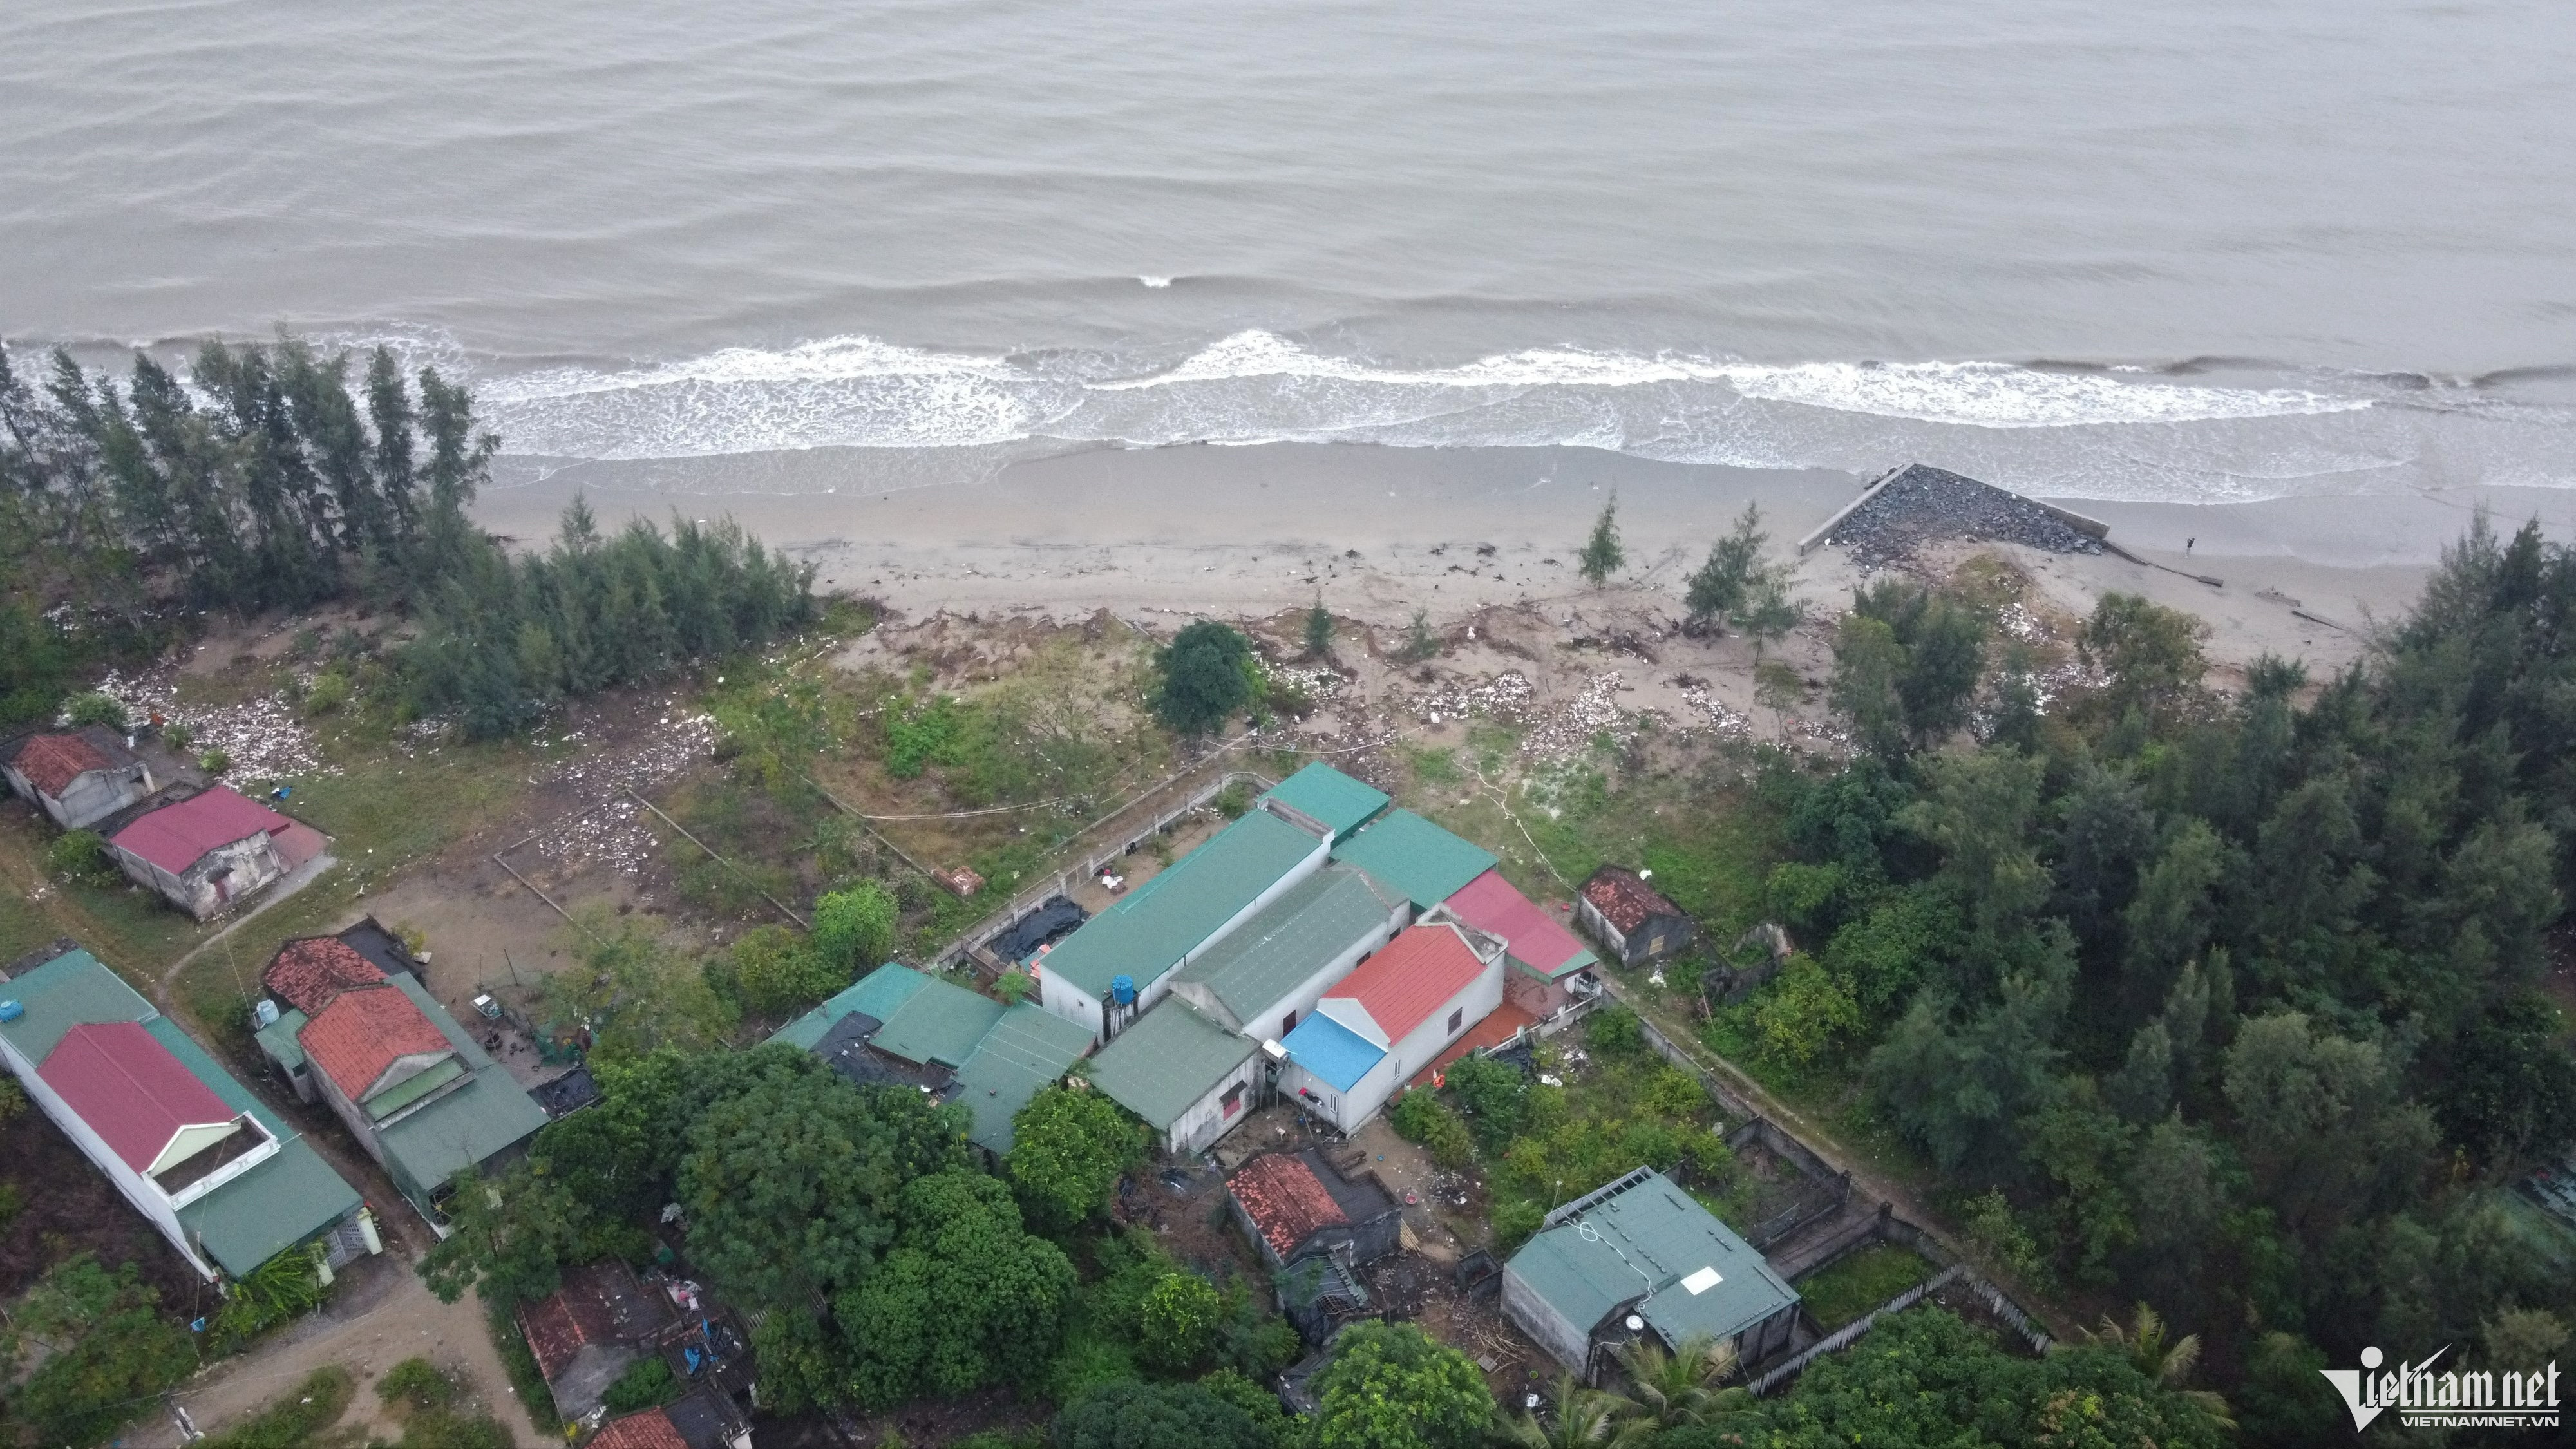 Biển ‘dọa nuốt’ 30 nhà dân, Thanh Hóa ban bố tình huống khẩn cấp